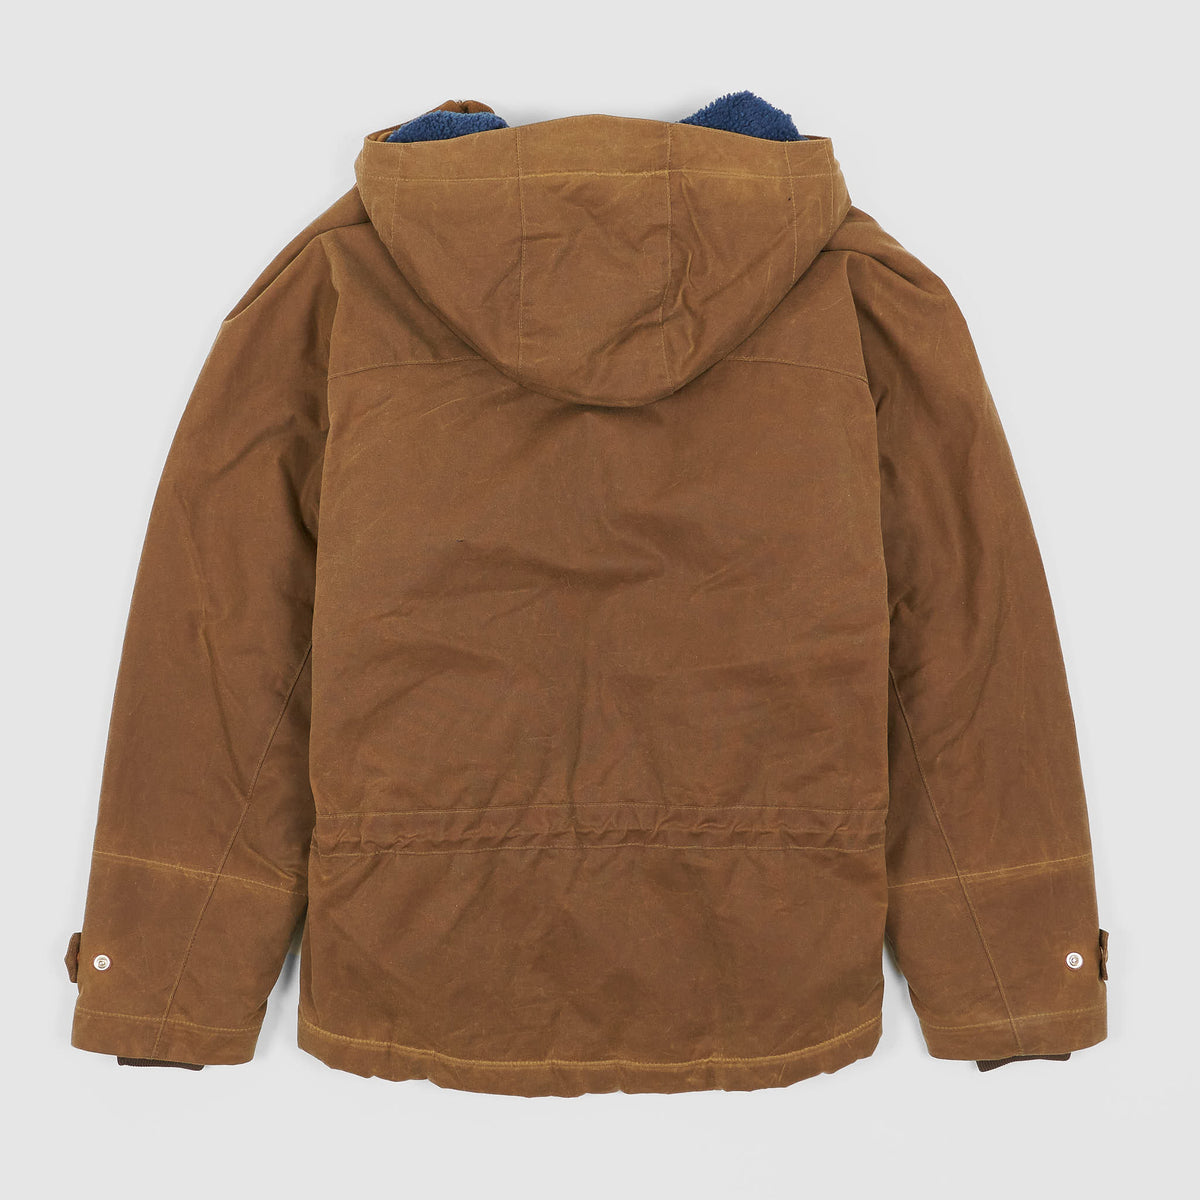 Filson Mountain Outdoor Waxed Cotton Jacket